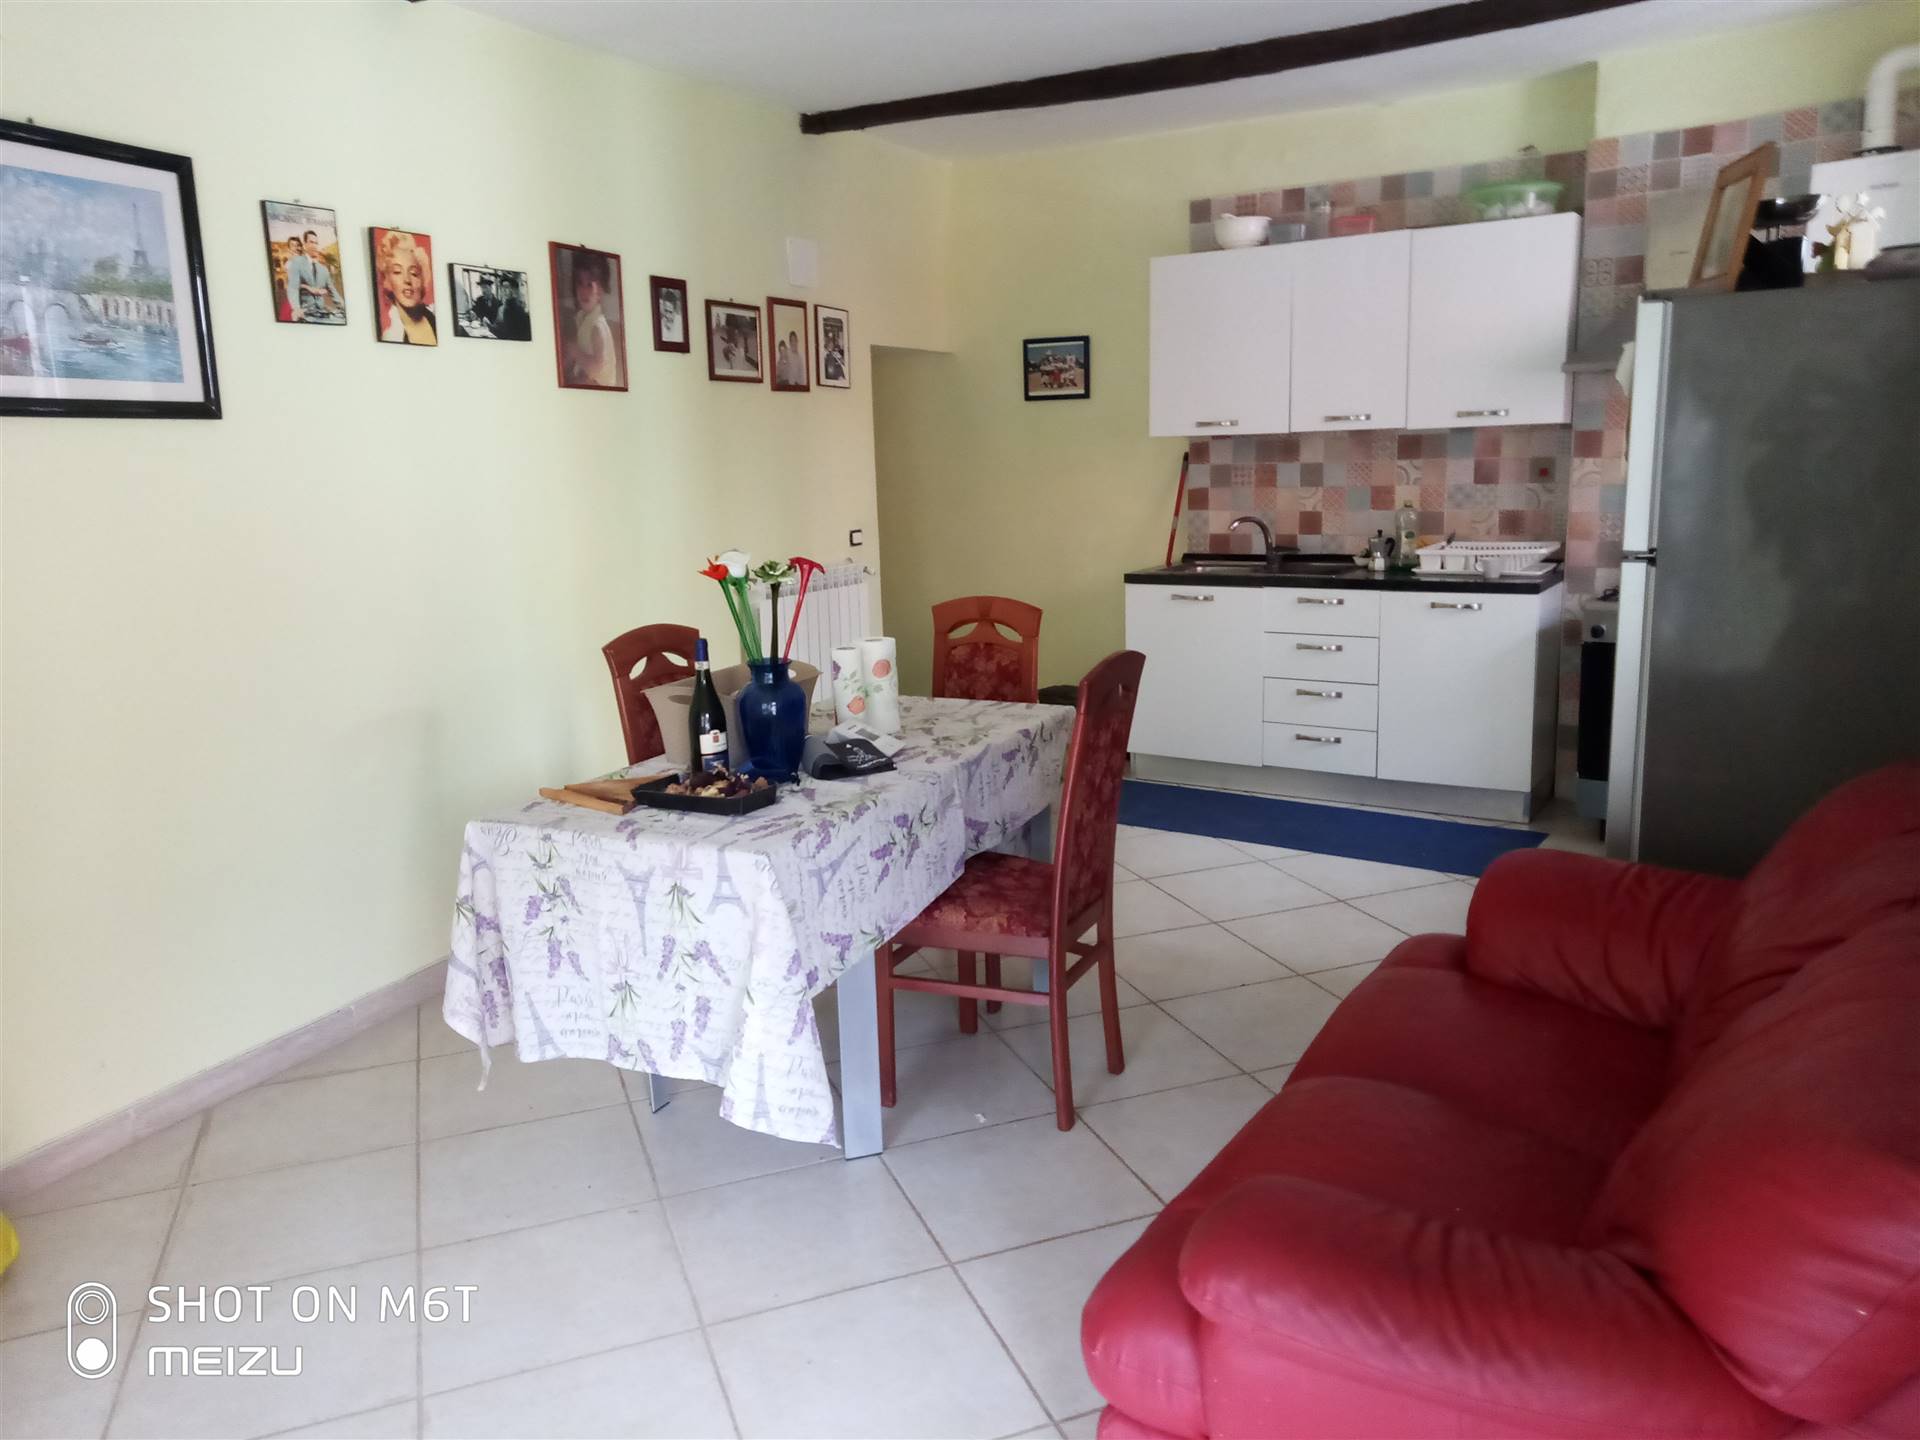 Appartamento in vendita a Piana Crixia, 4 locali, prezzo € 58.000 | CambioCasa.it